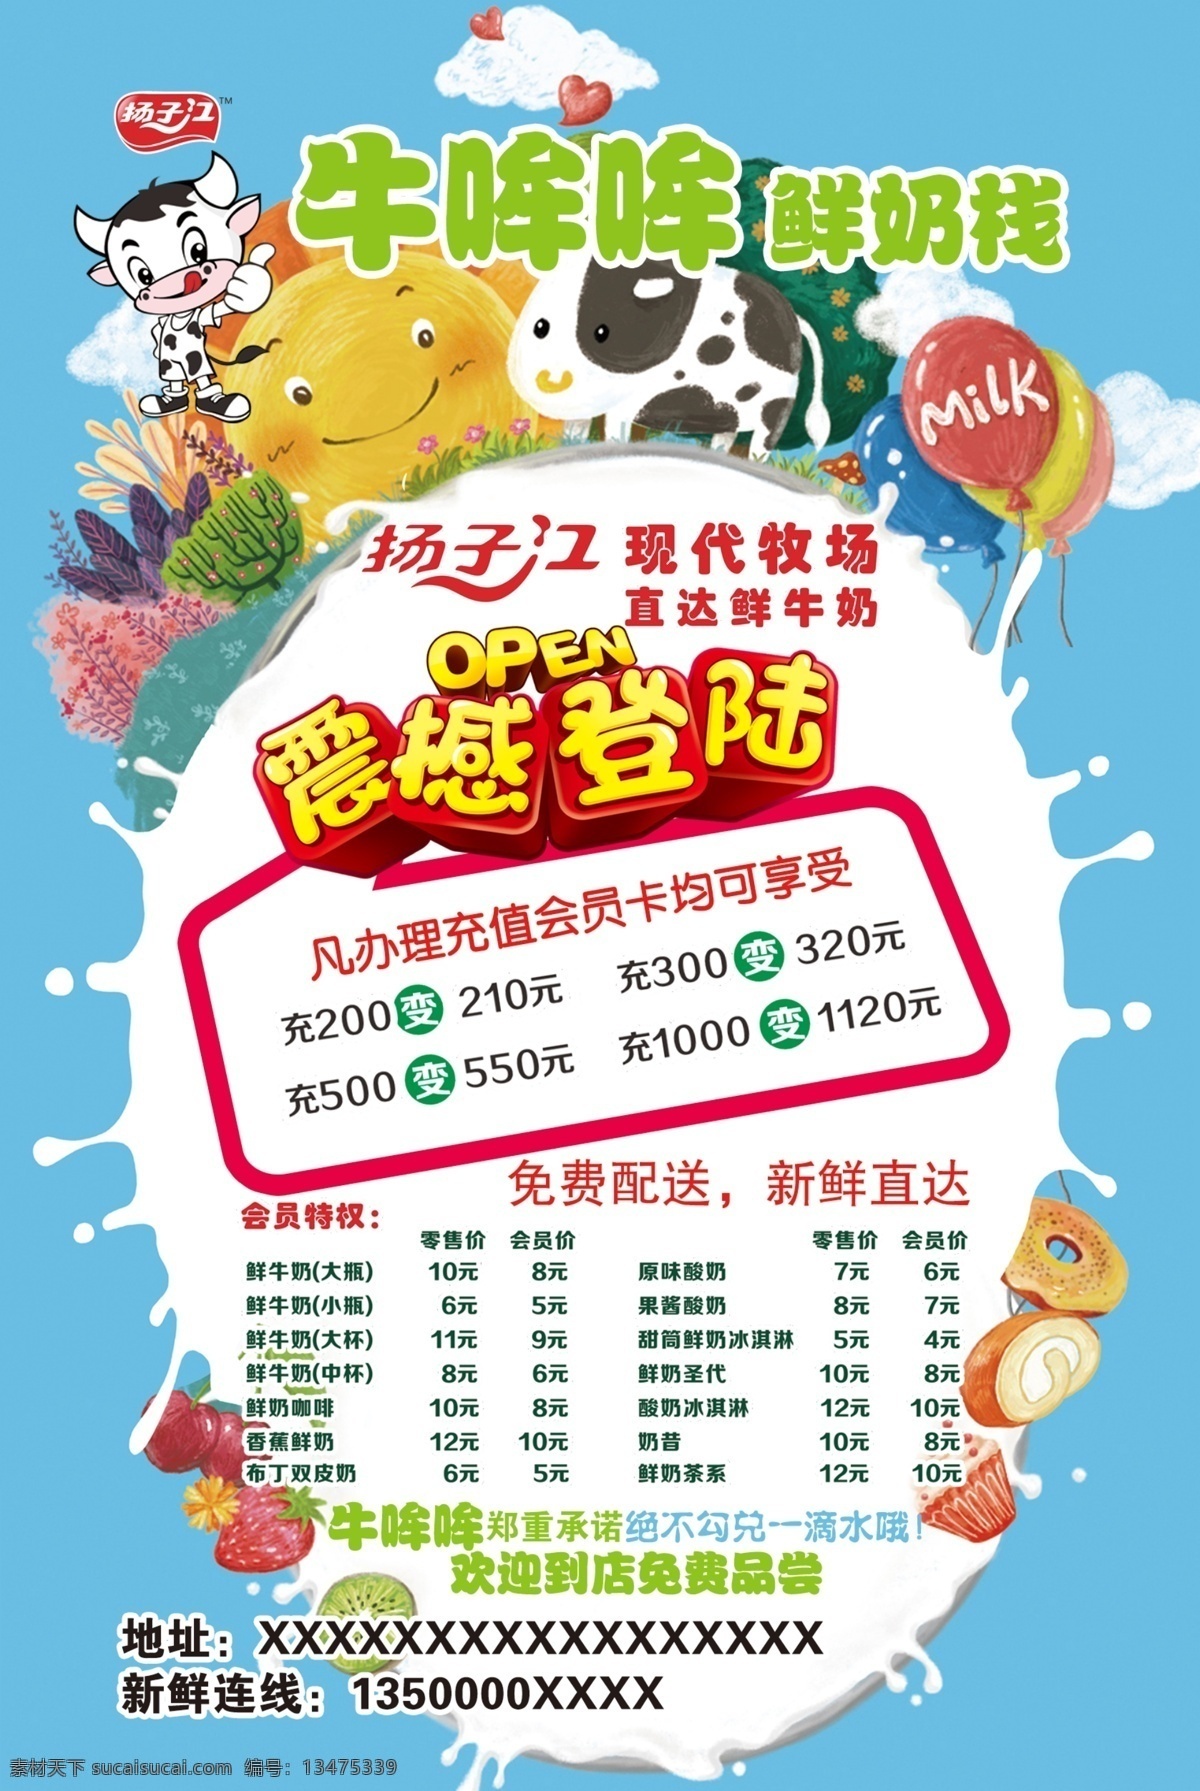 牛奶宣传单 牛奶 牛哞哞 震撼登陆 小牛 扬子江 dm宣传单